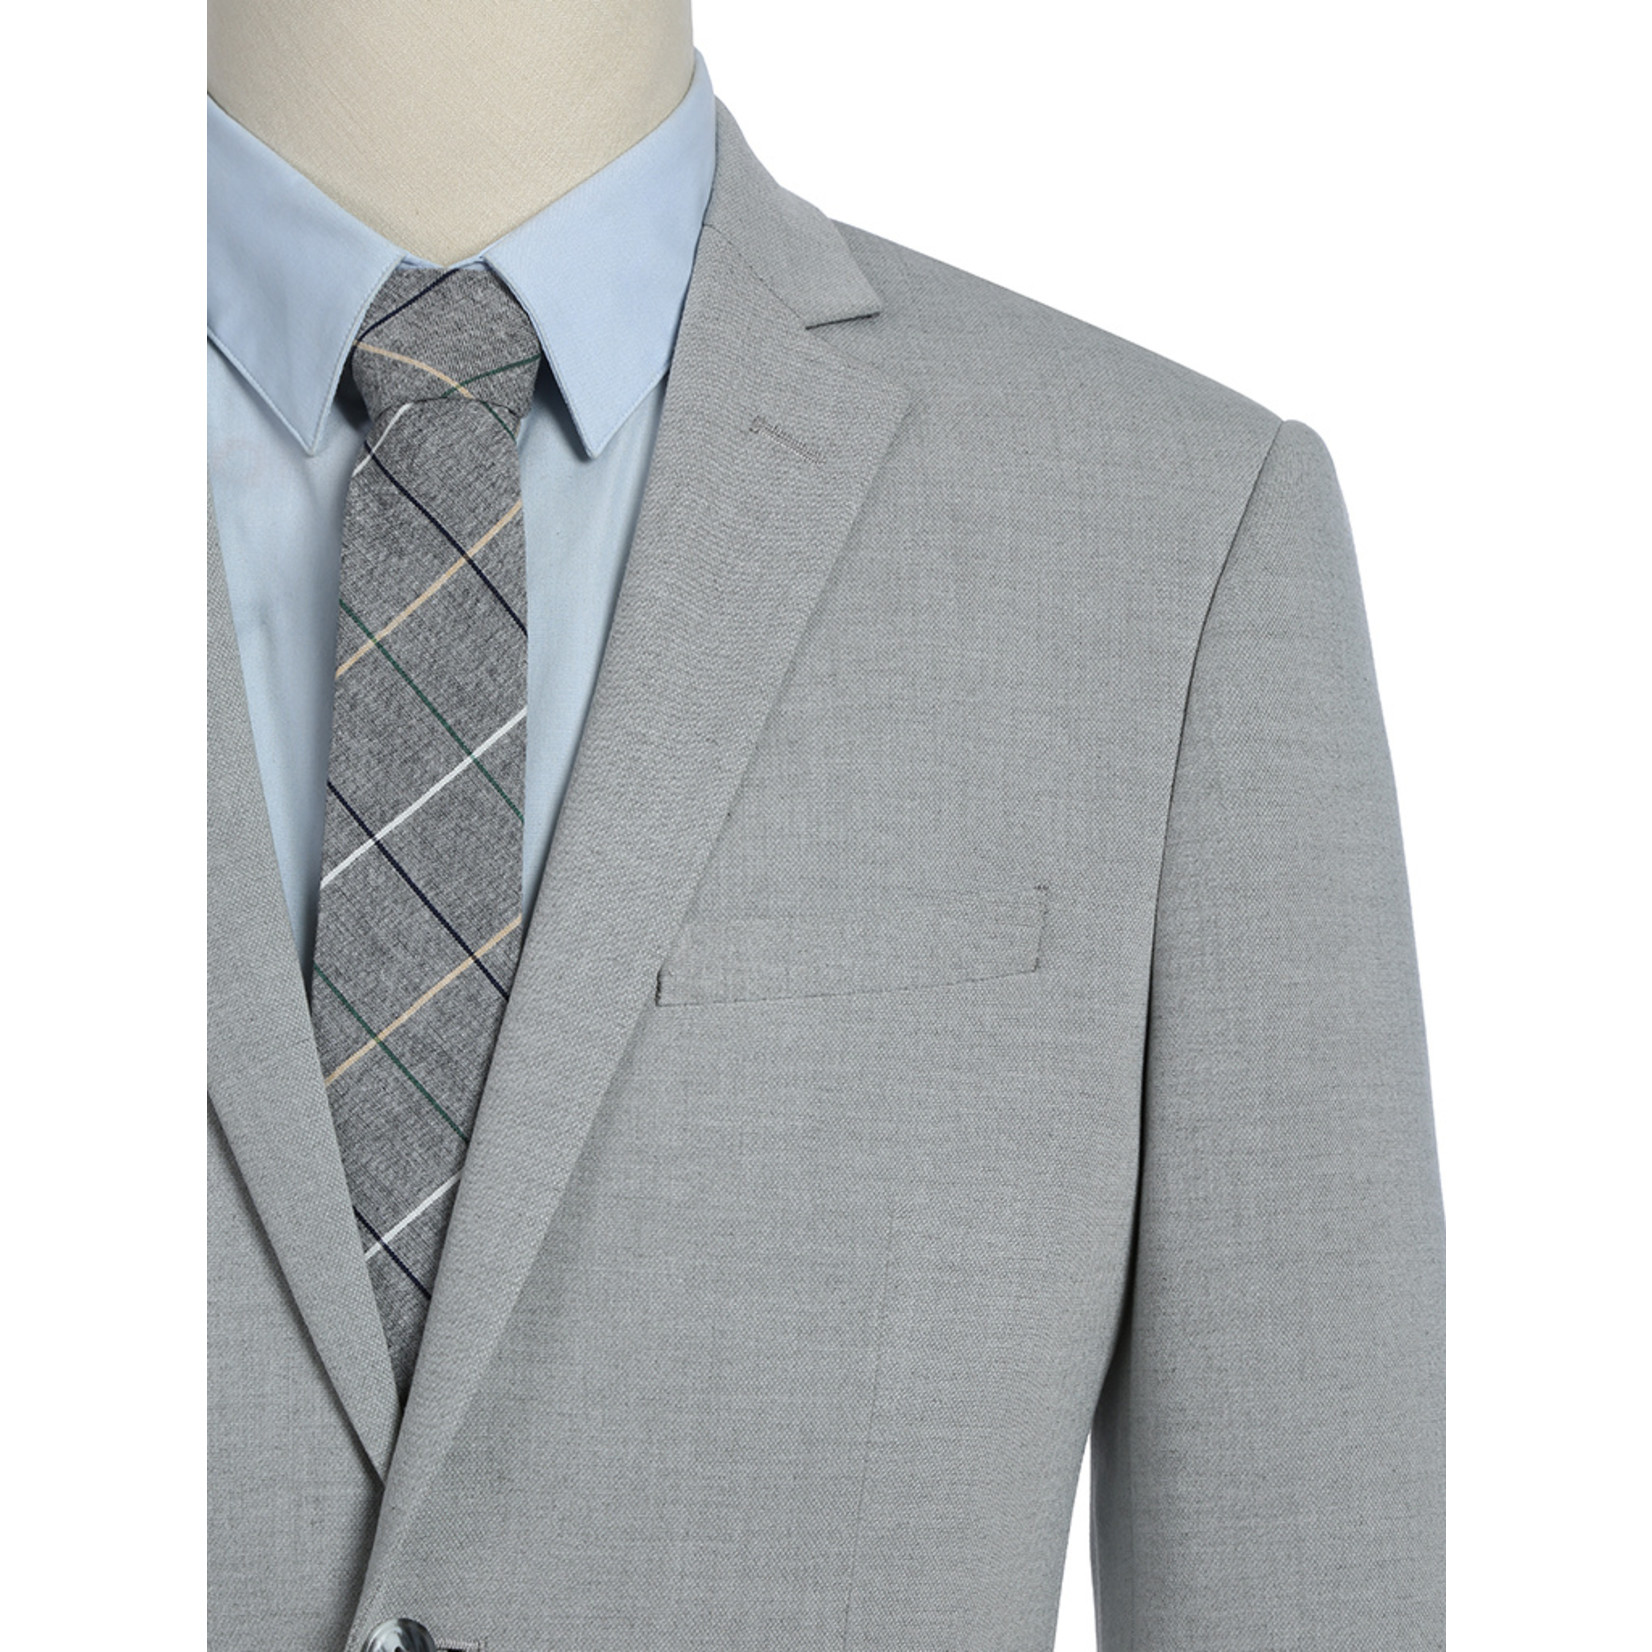 Renoir Renoir Slim Fit Suit 202-7 Silver Grey